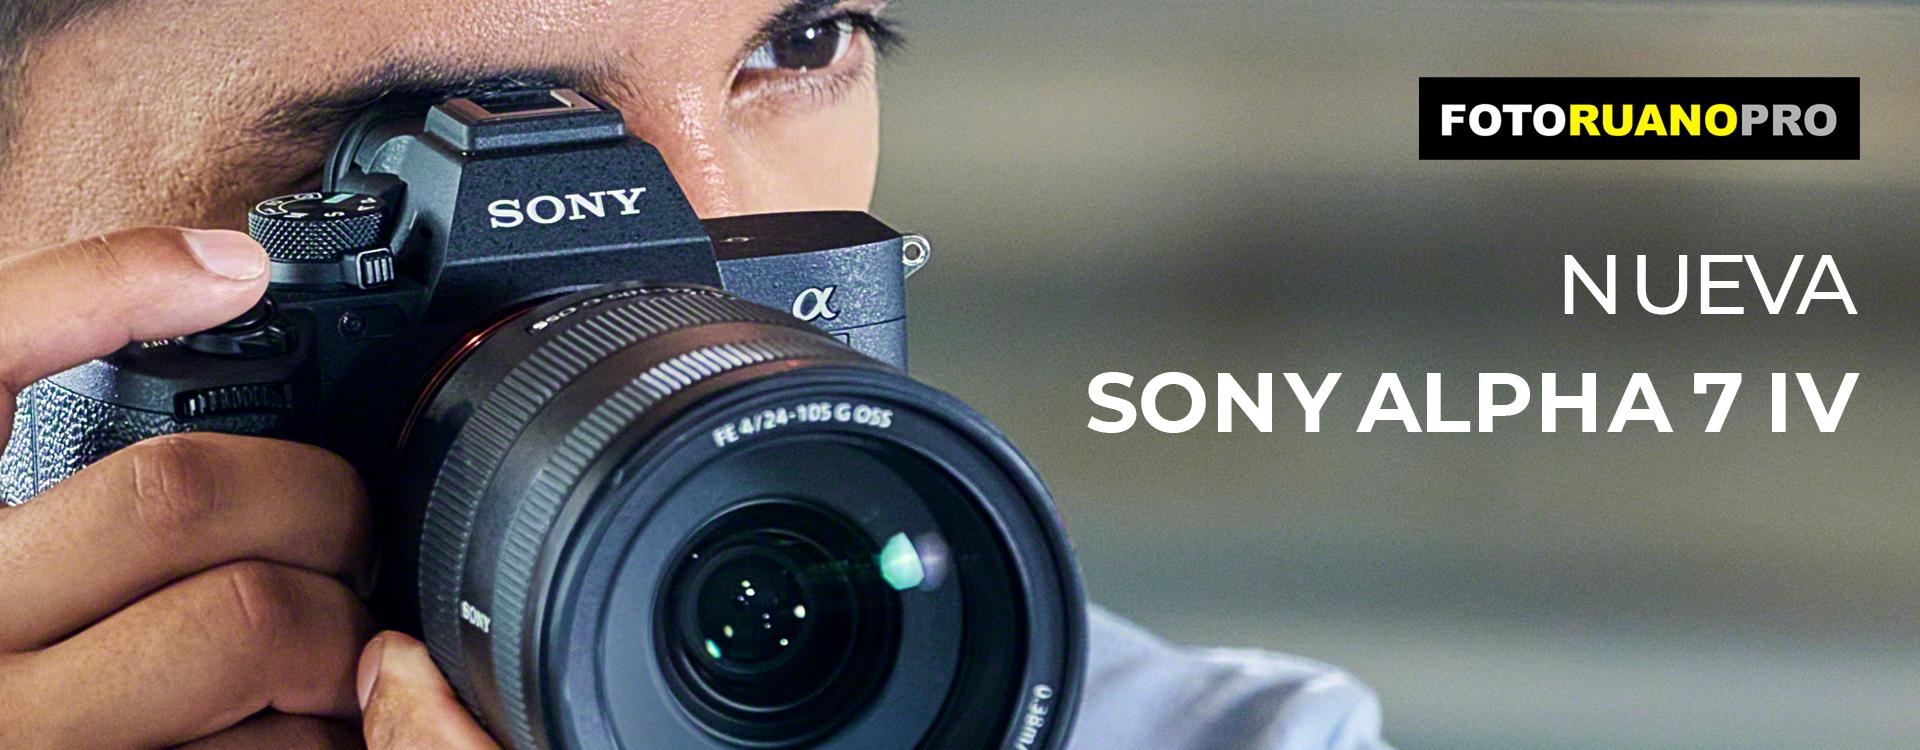 Sony Alpha 7IV, la nueva referencia para vídeo y fotografía profesional